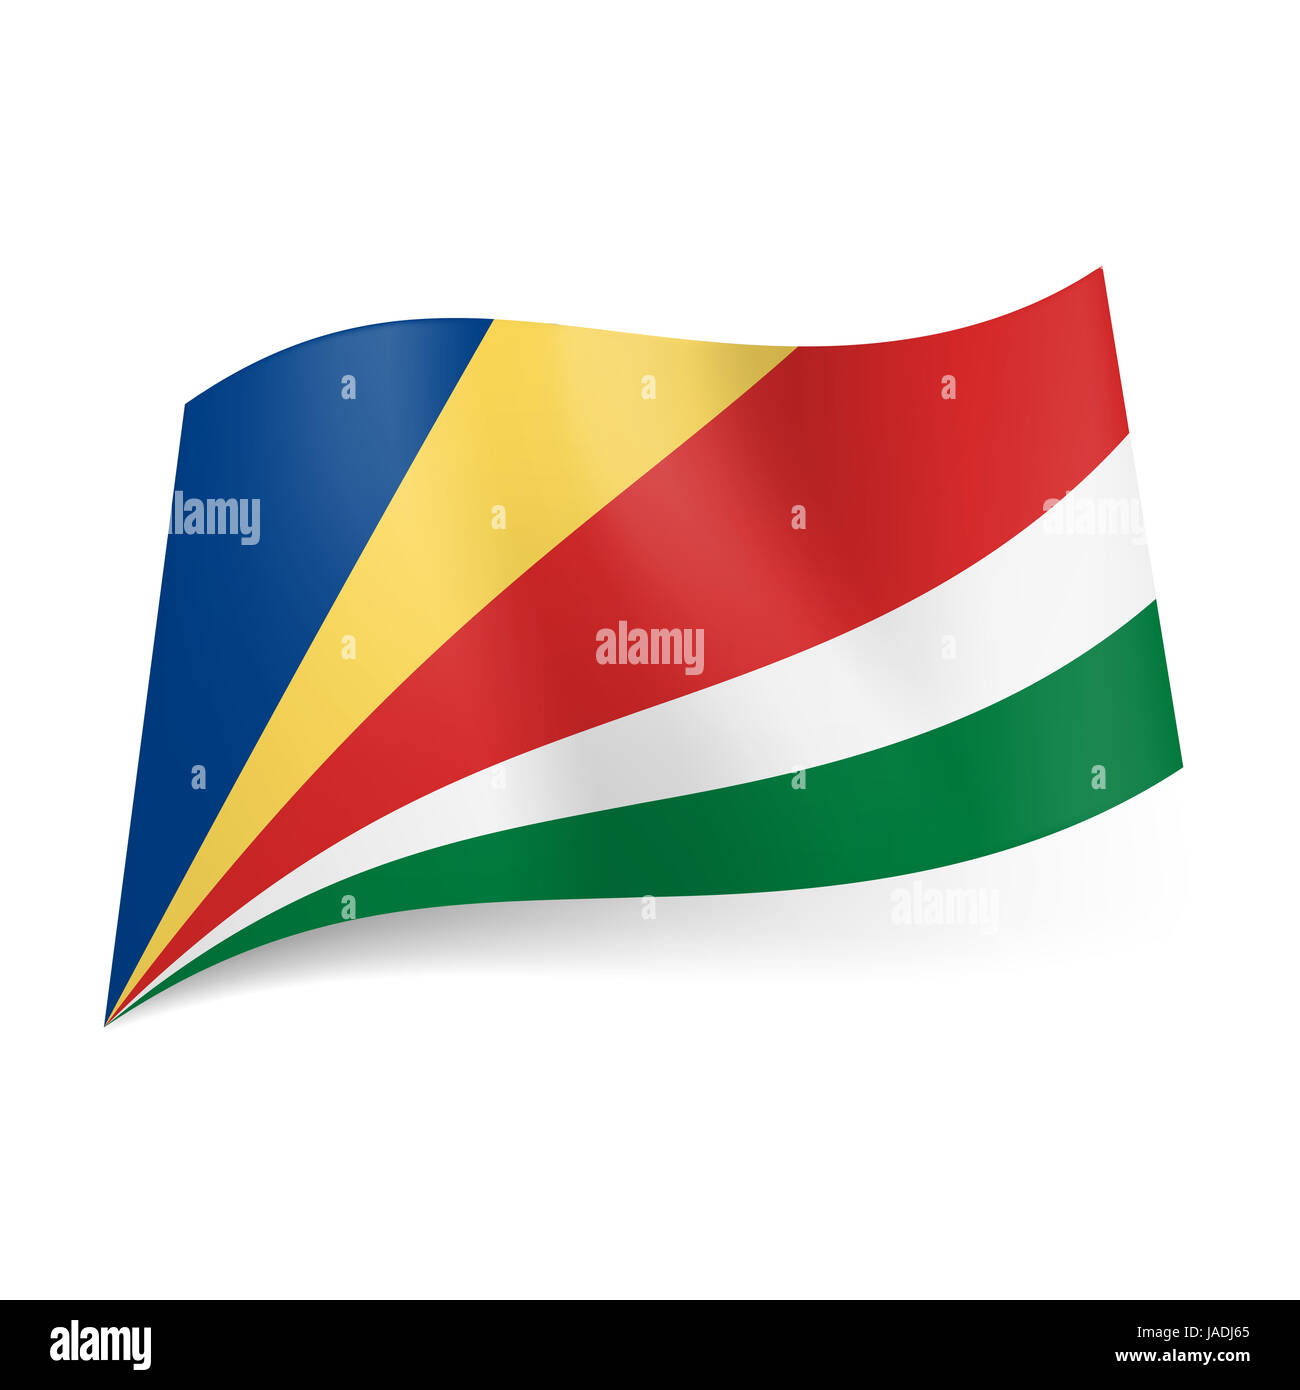 Flagge Der Seychellen Schrage Blau Gelb Rot Weiss Und Grun Streifen Stockfotografie Alamy